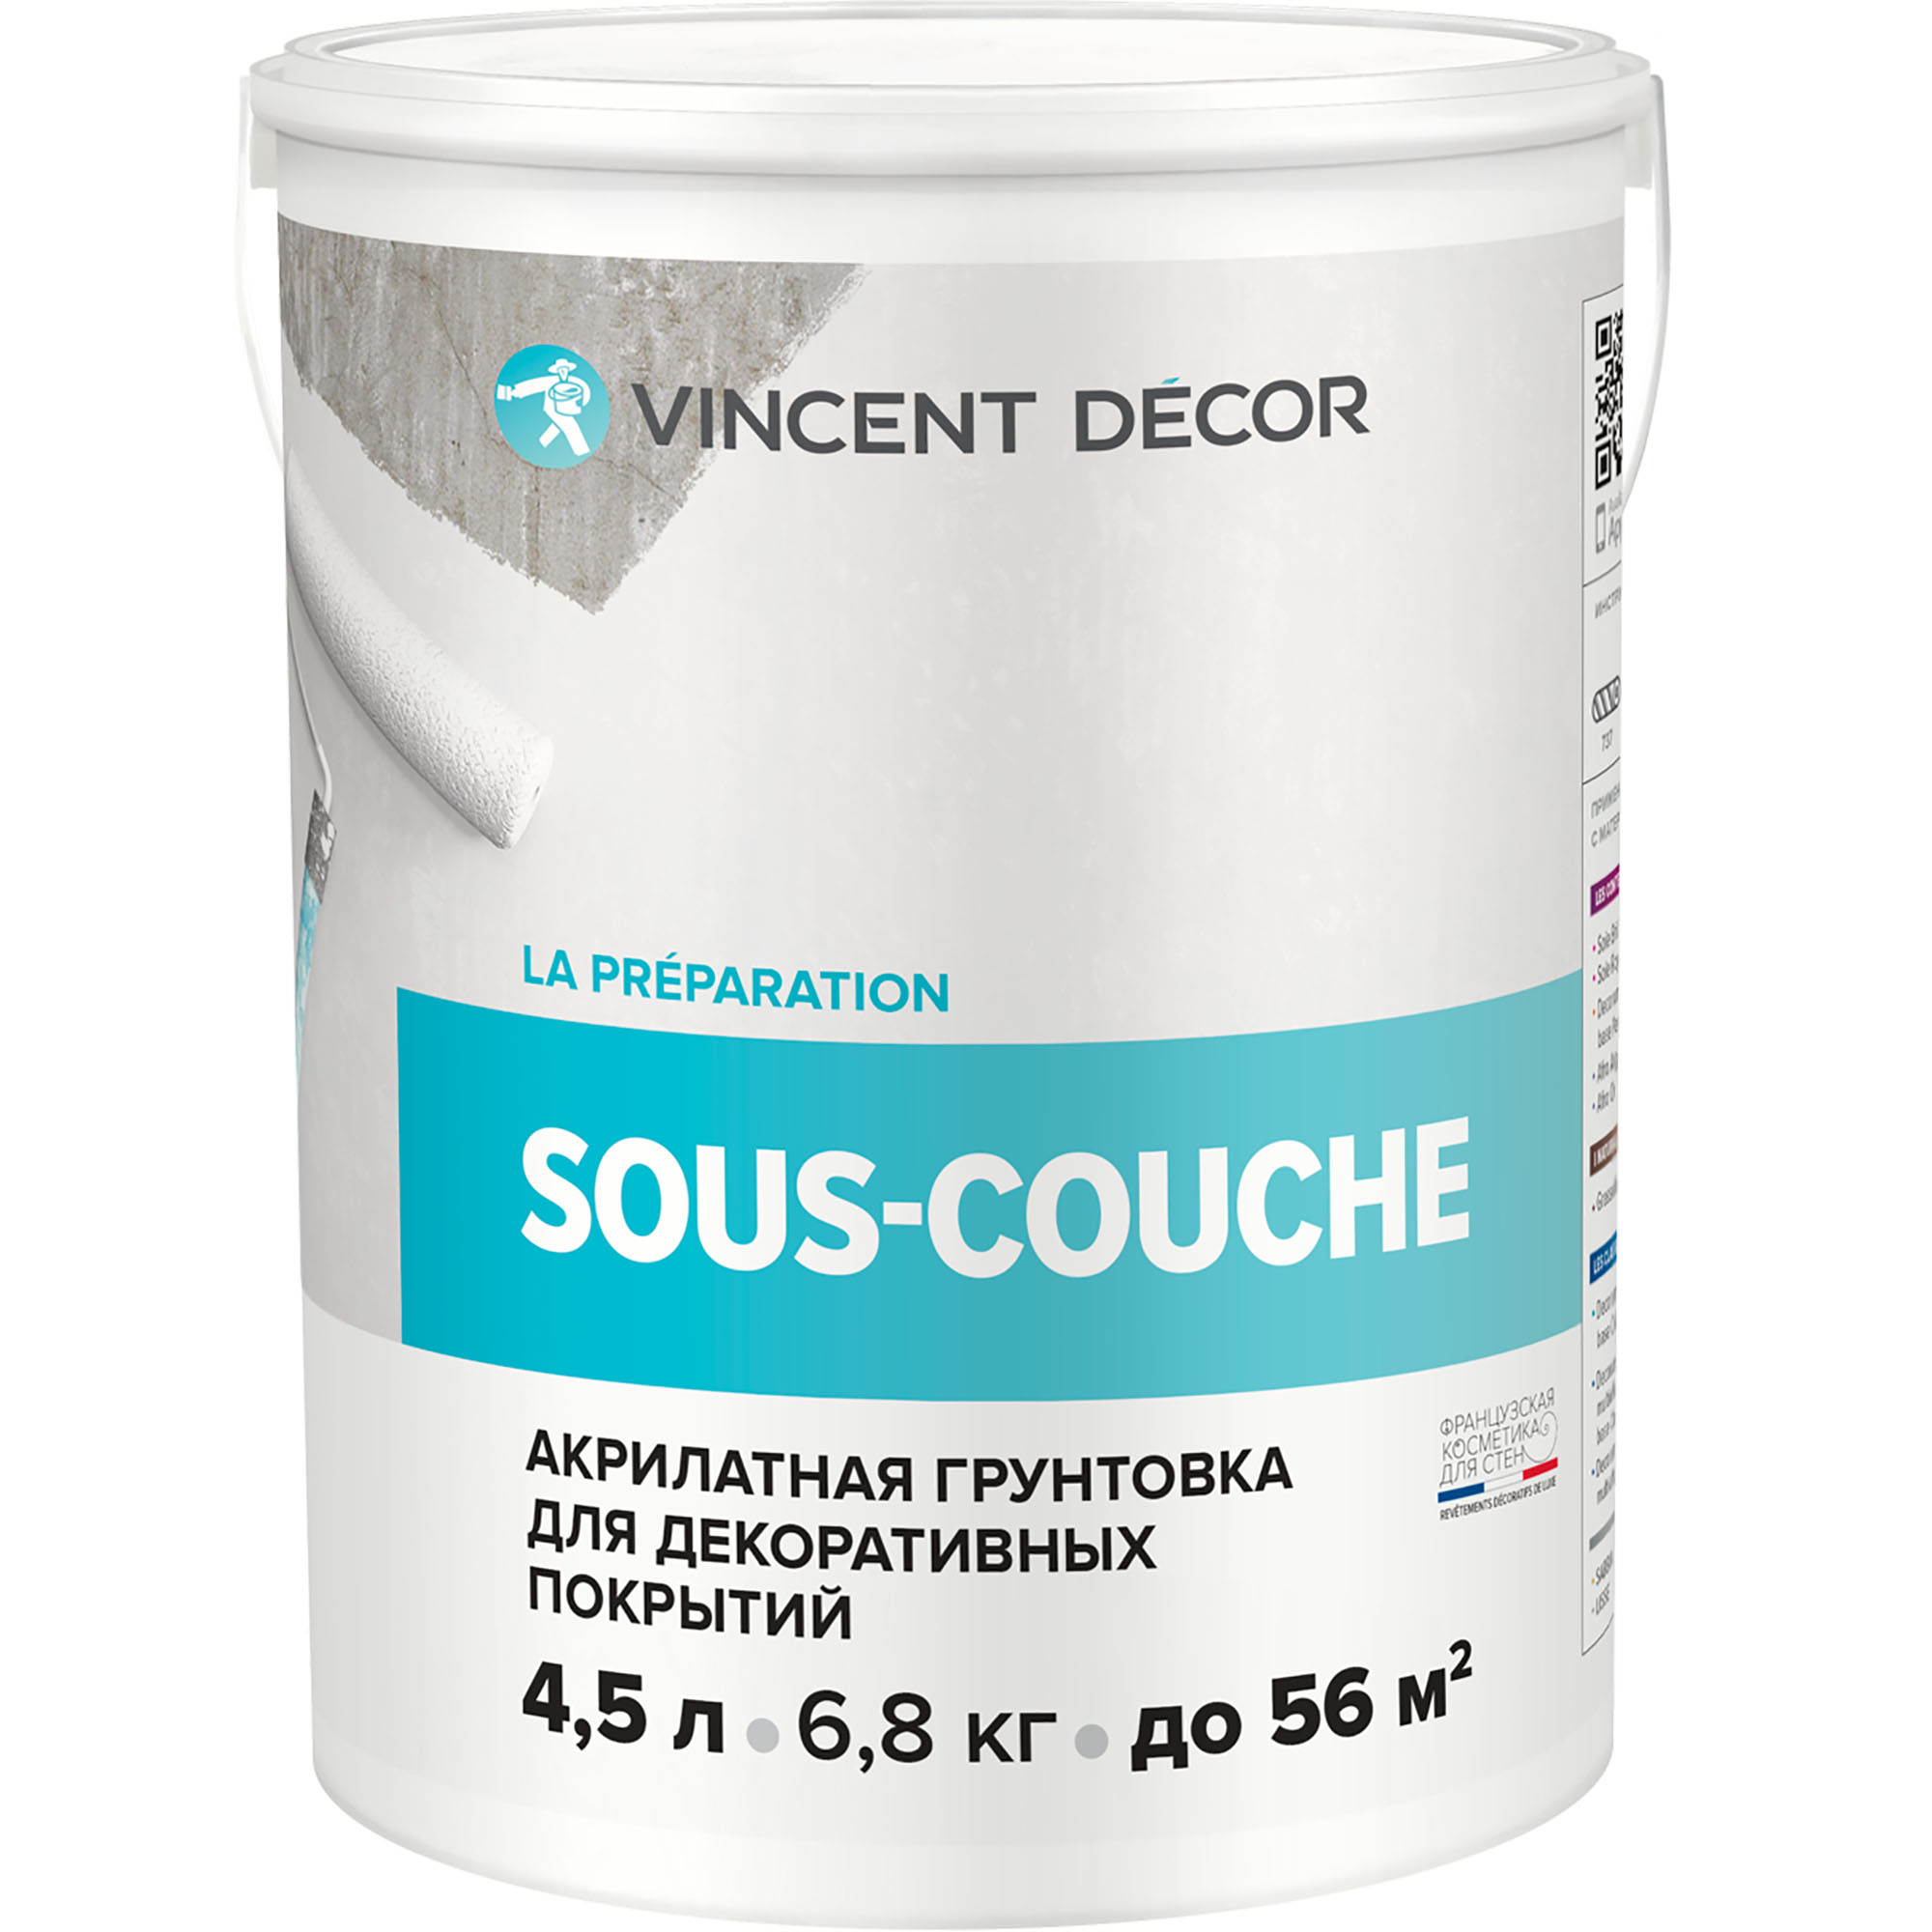 Грунтовка для декоративных покрытий Vincent Decor Sous-couche 4,5 л грунтовка vincent sous couche bois 9 2 кг 9 л